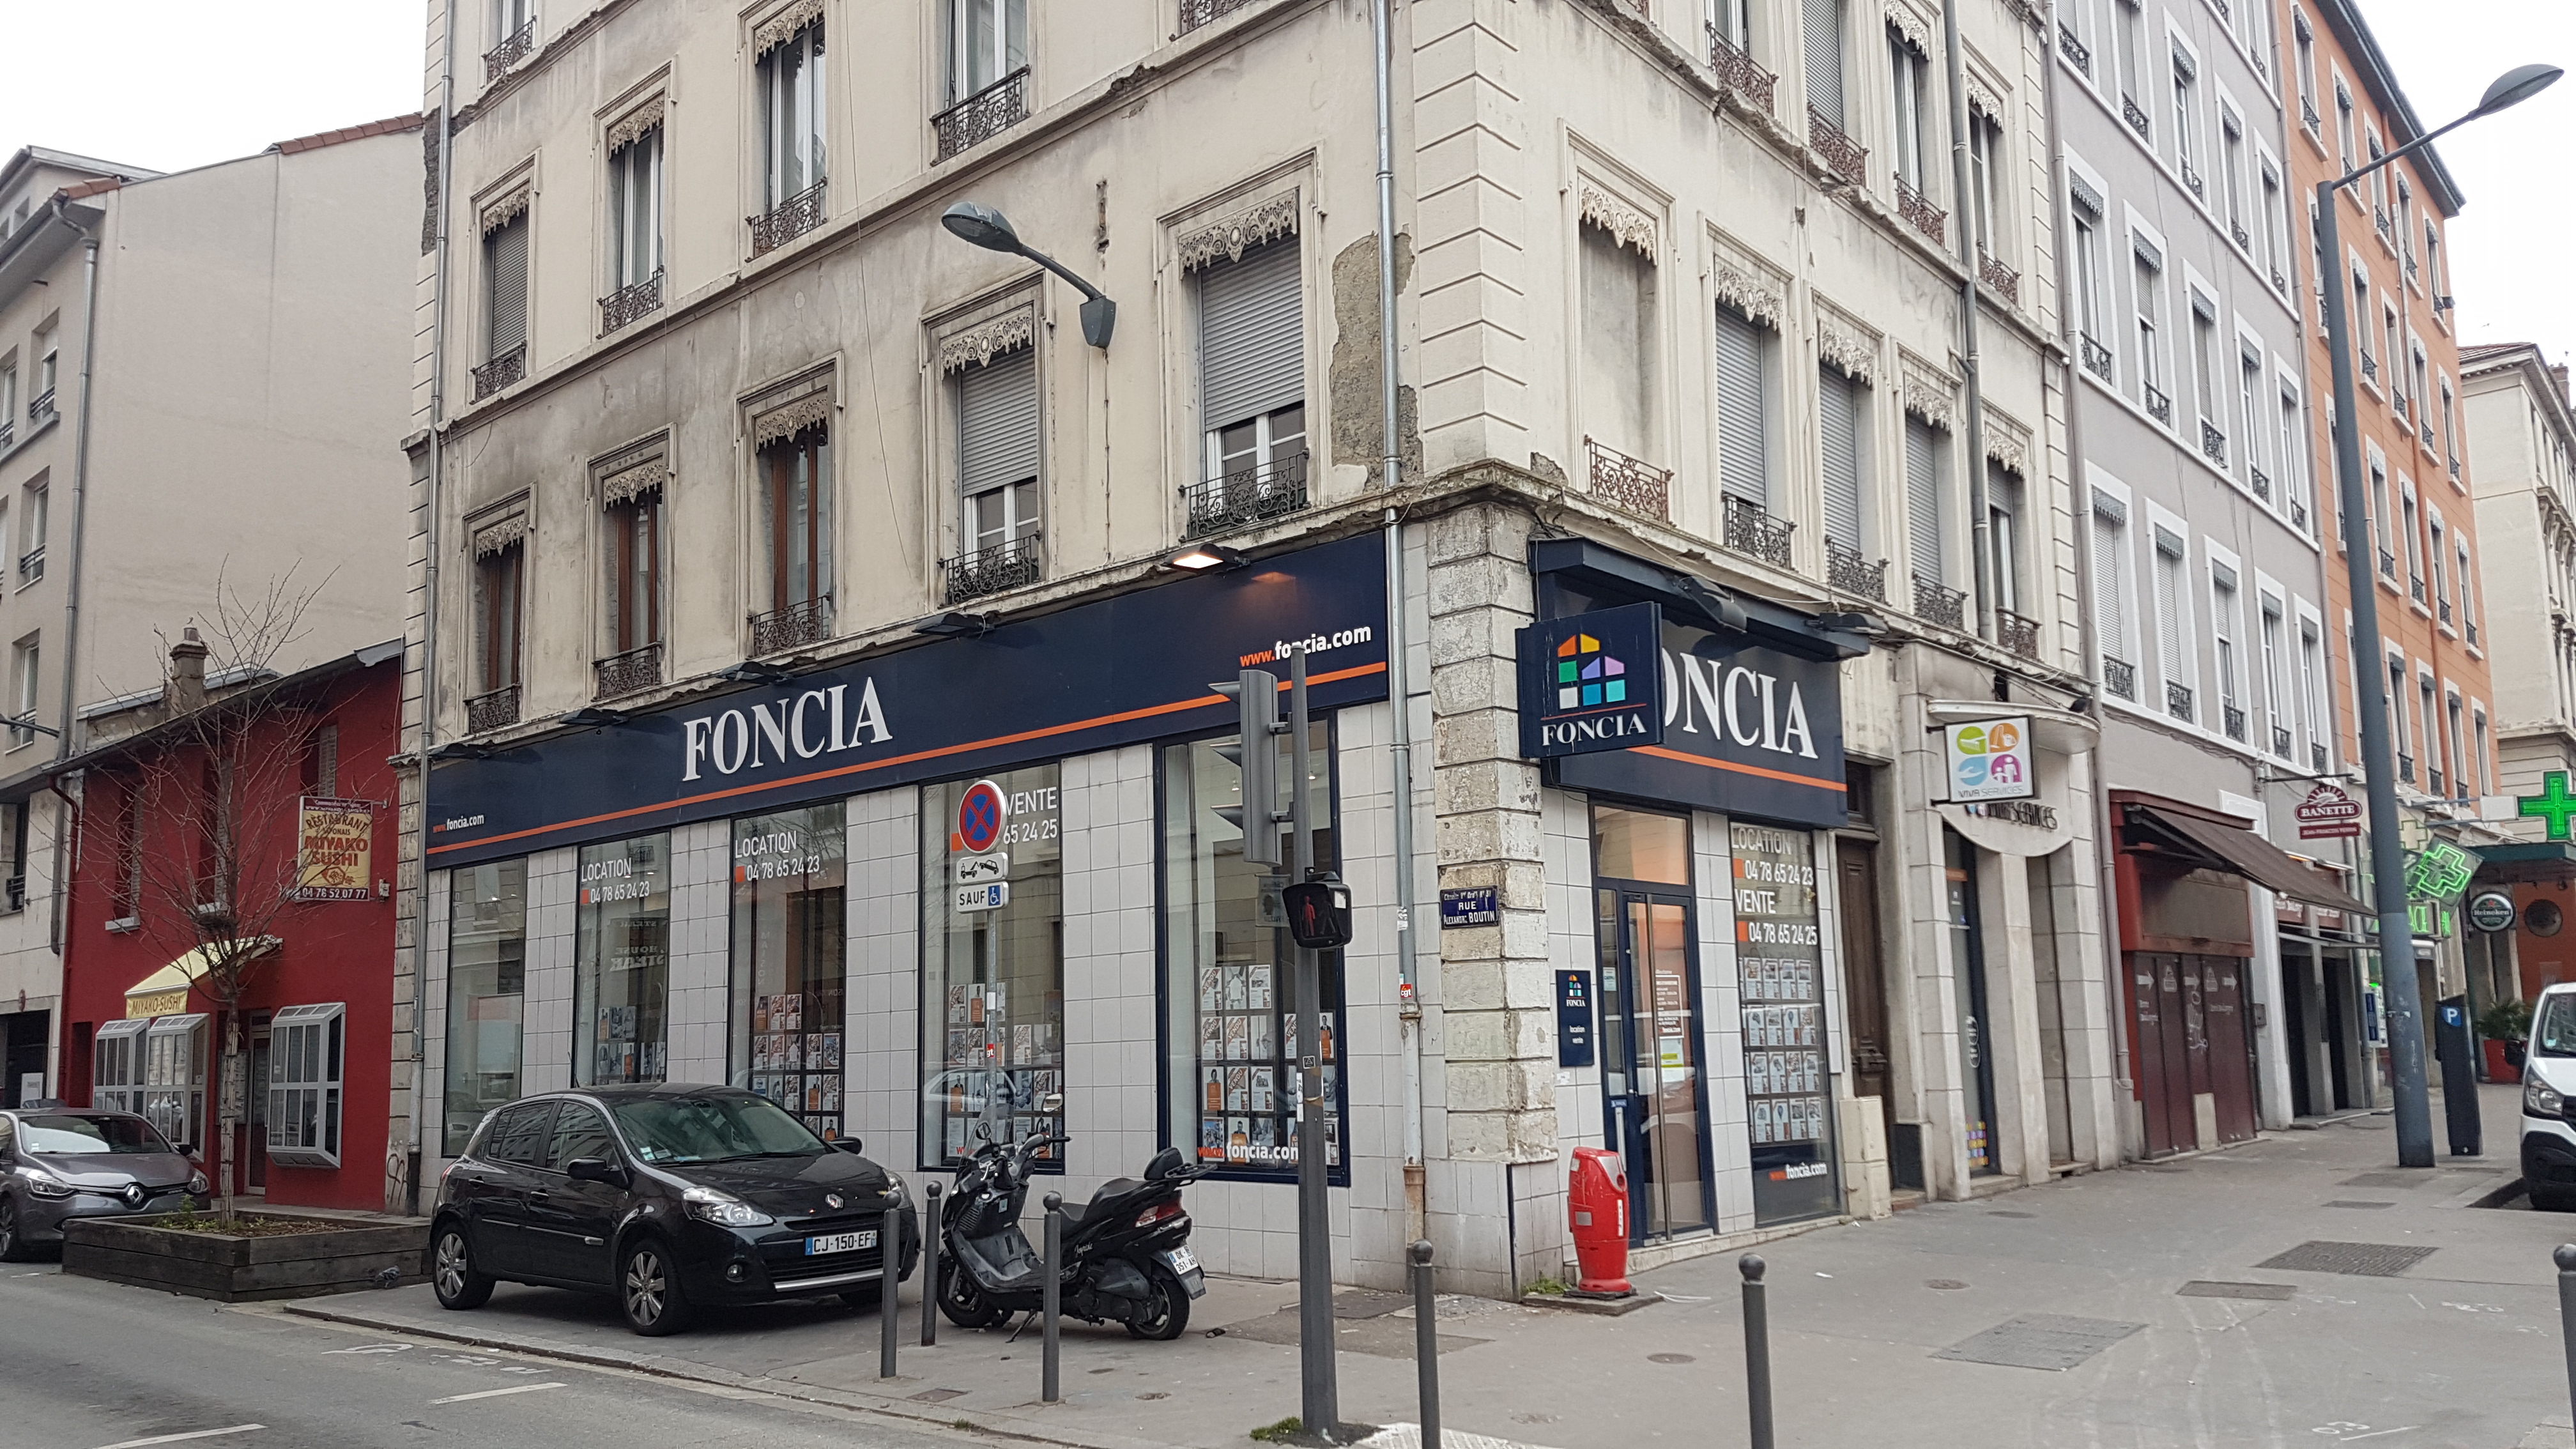 VILLEURBANNE – Cours Emile ZOLA – A VENDRE murs commerciaux libres